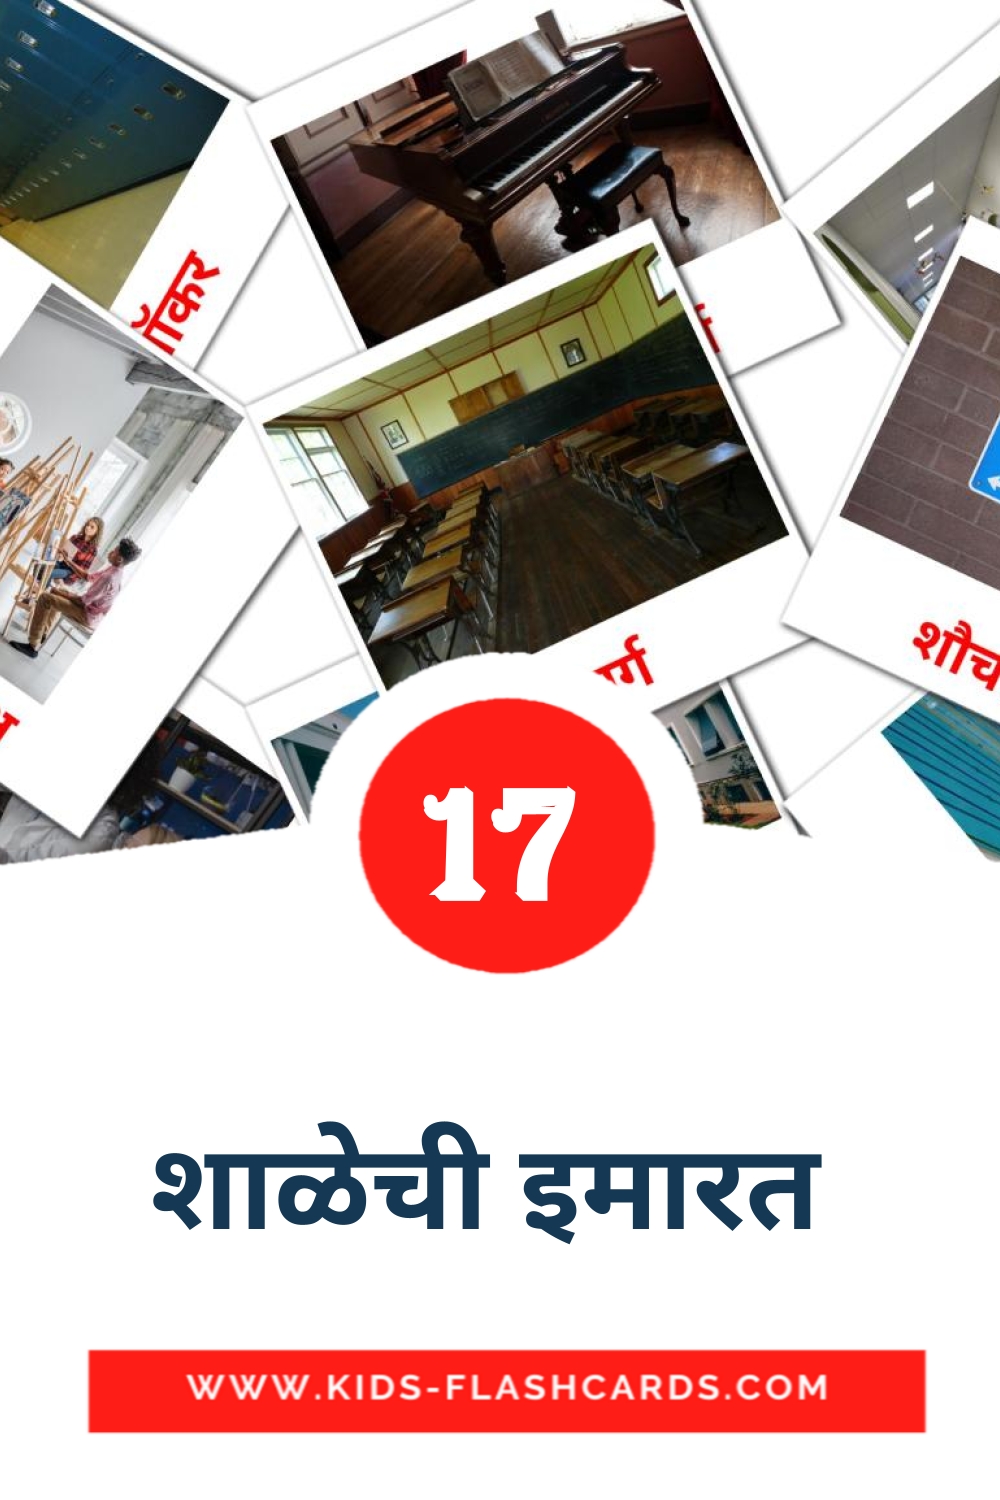 17 tarjetas didacticas de शाळेची इमारत  para el jardín de infancia en marathi